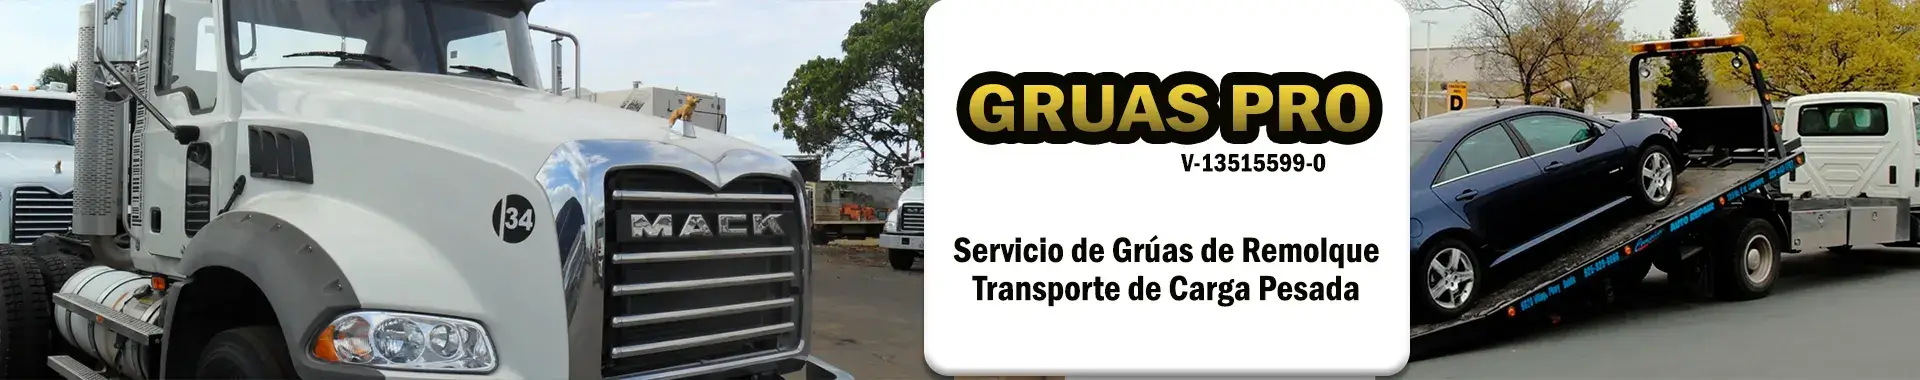 Imagen 1 del perfil de Grúas Pro